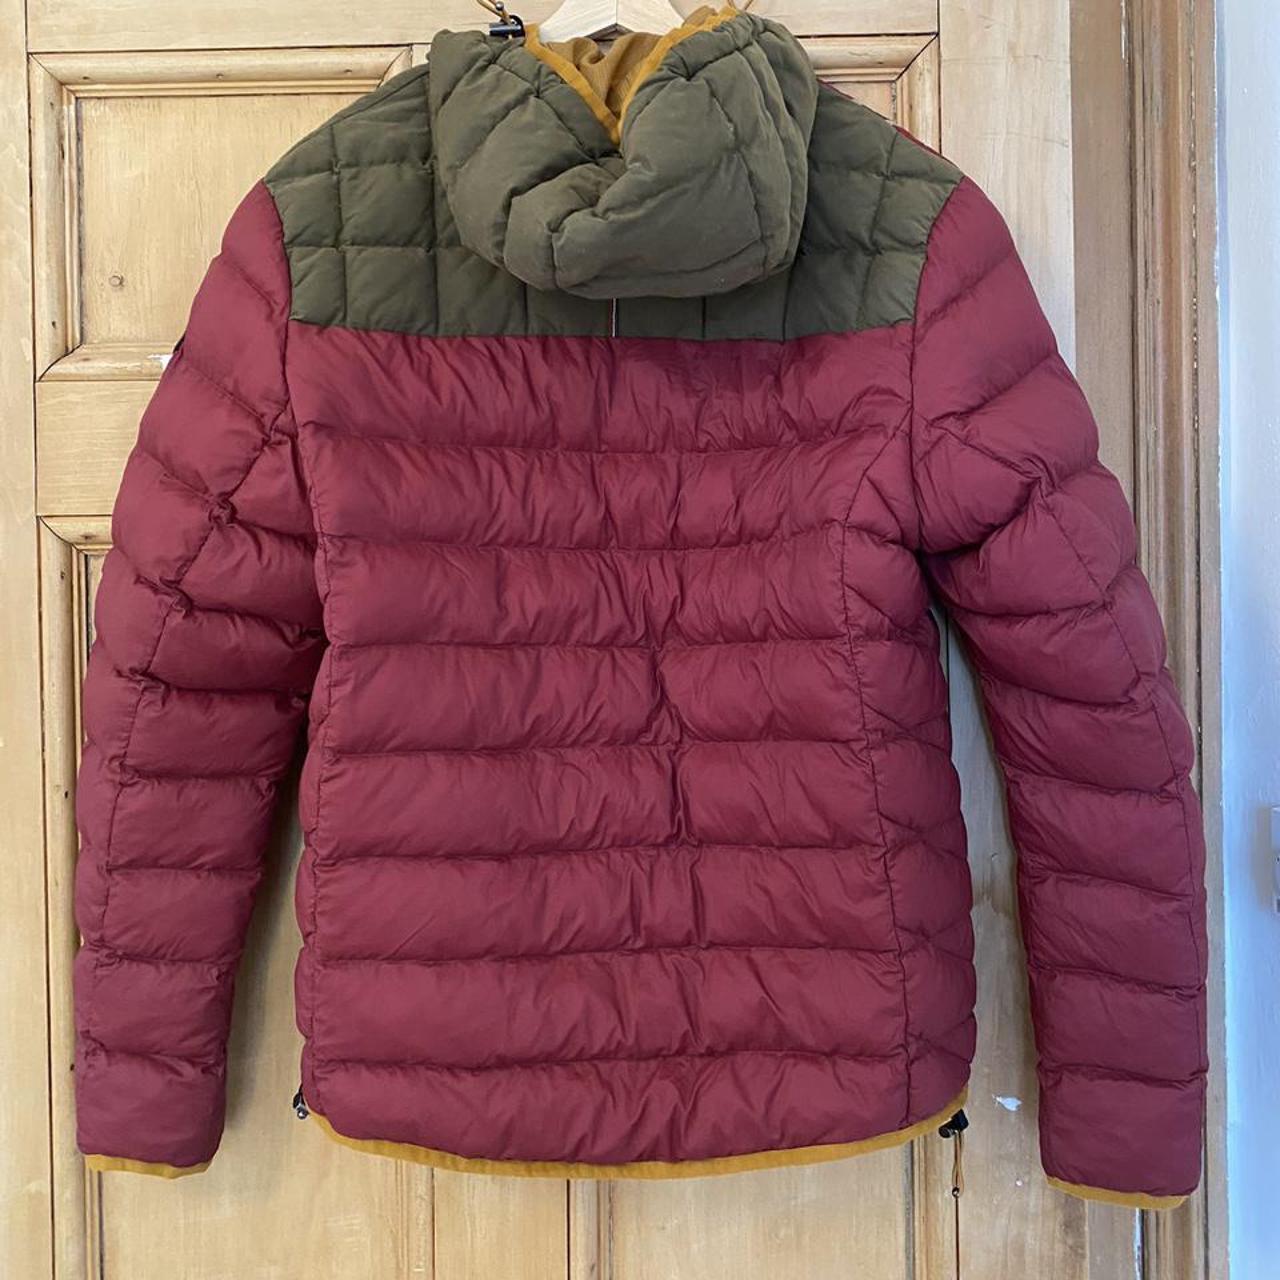 Napapijri rate vintage puffer jacket, burgundy and... - Depop